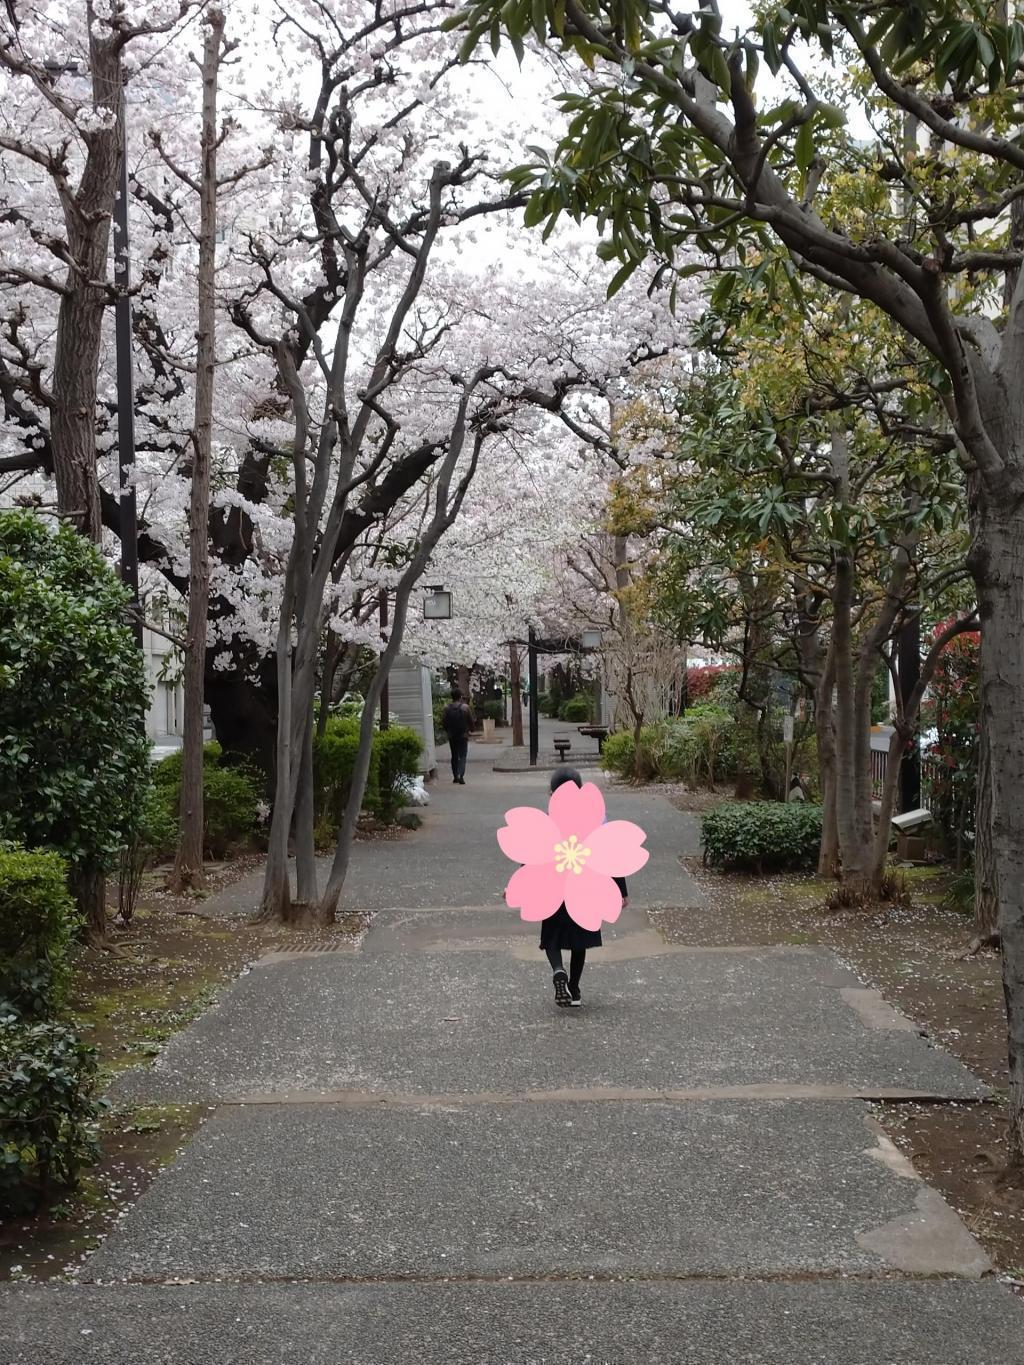  桜の下でランドセル姿の「前撮り」行脚